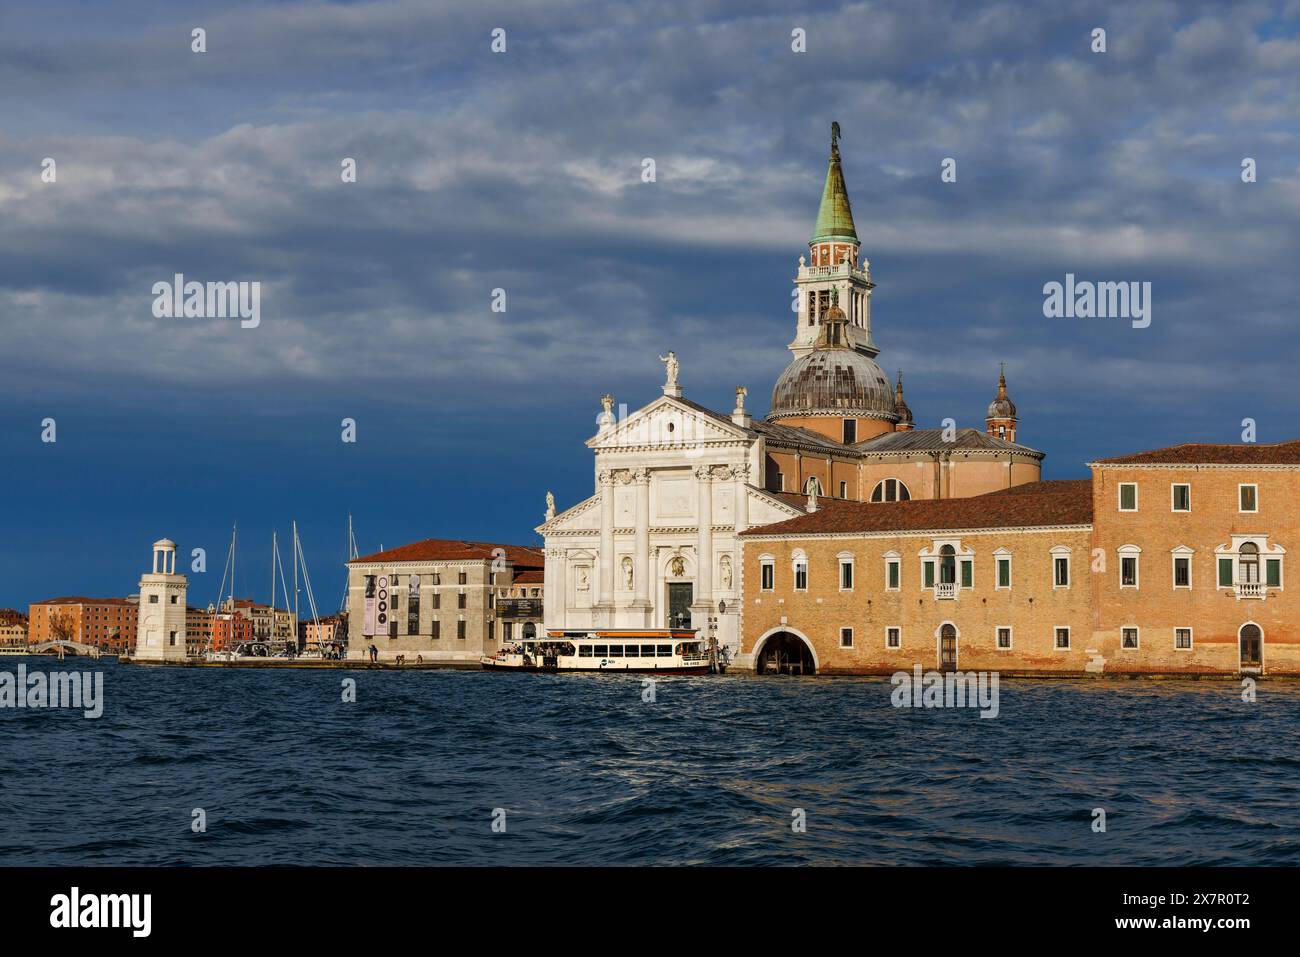 Venezia, Provincia di Venezia, regione Veneto, Italia. L'isola o l'isola di San Giorgio e l'omonima chiesa. Venezia è patrimonio dell'umanità dell'UNESCO Foto Stock